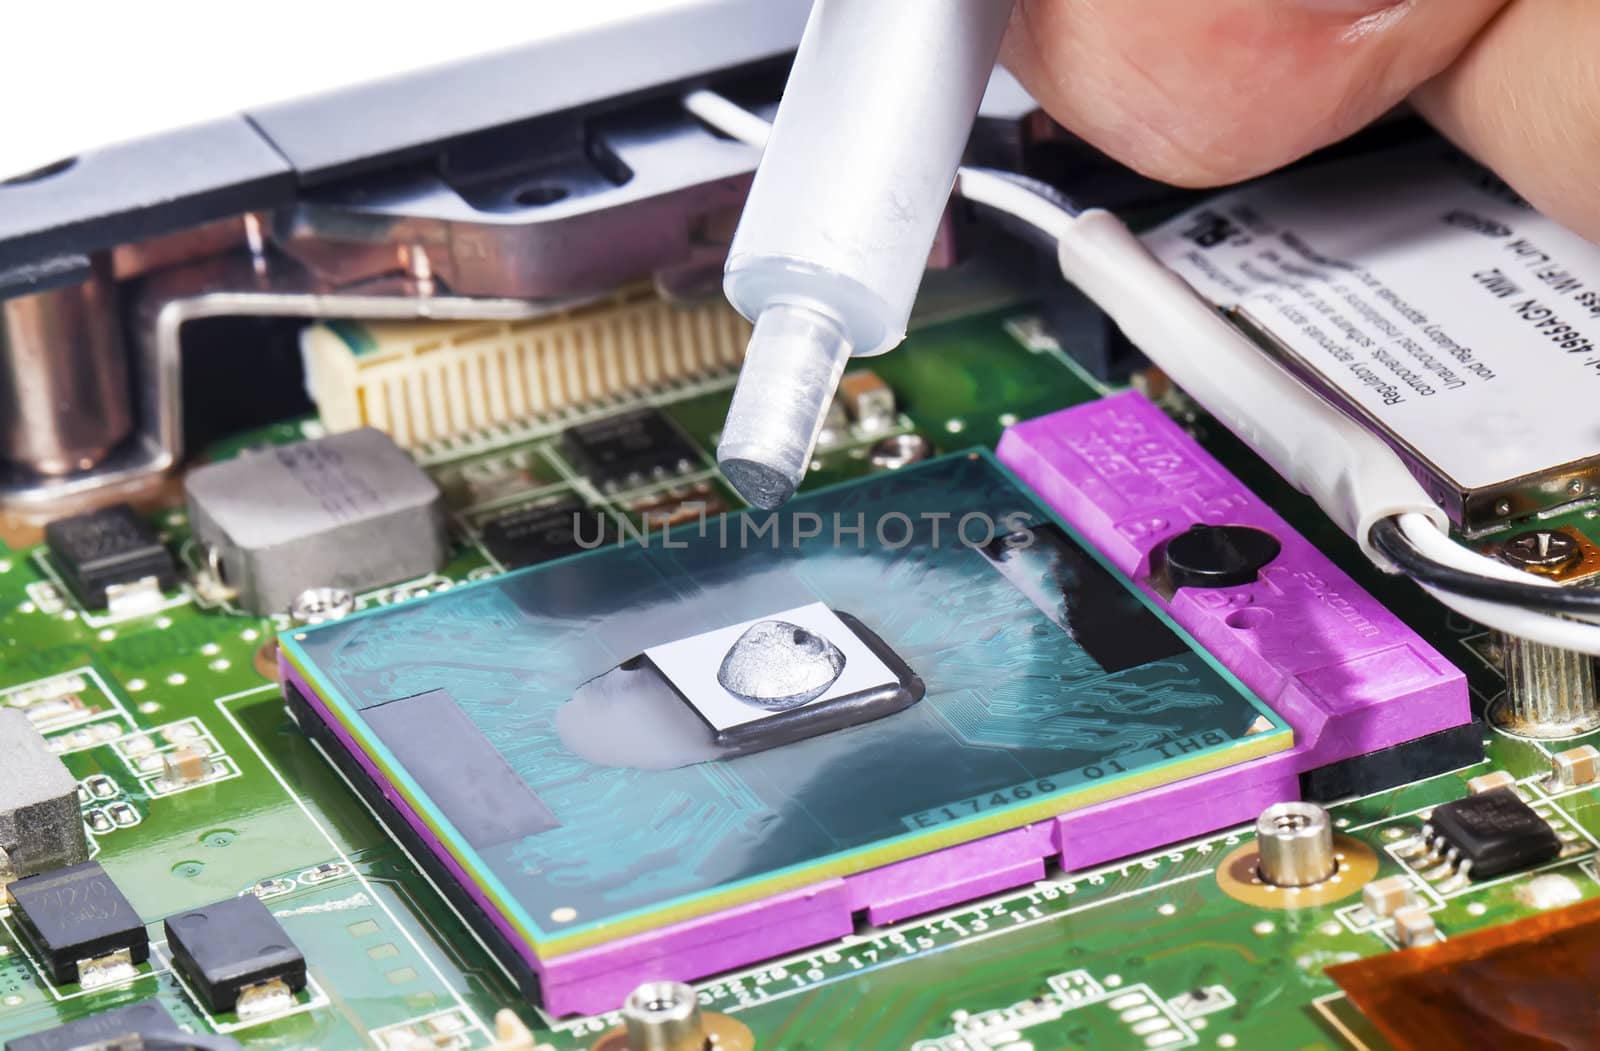 Laptop video chip repair by RawGroup